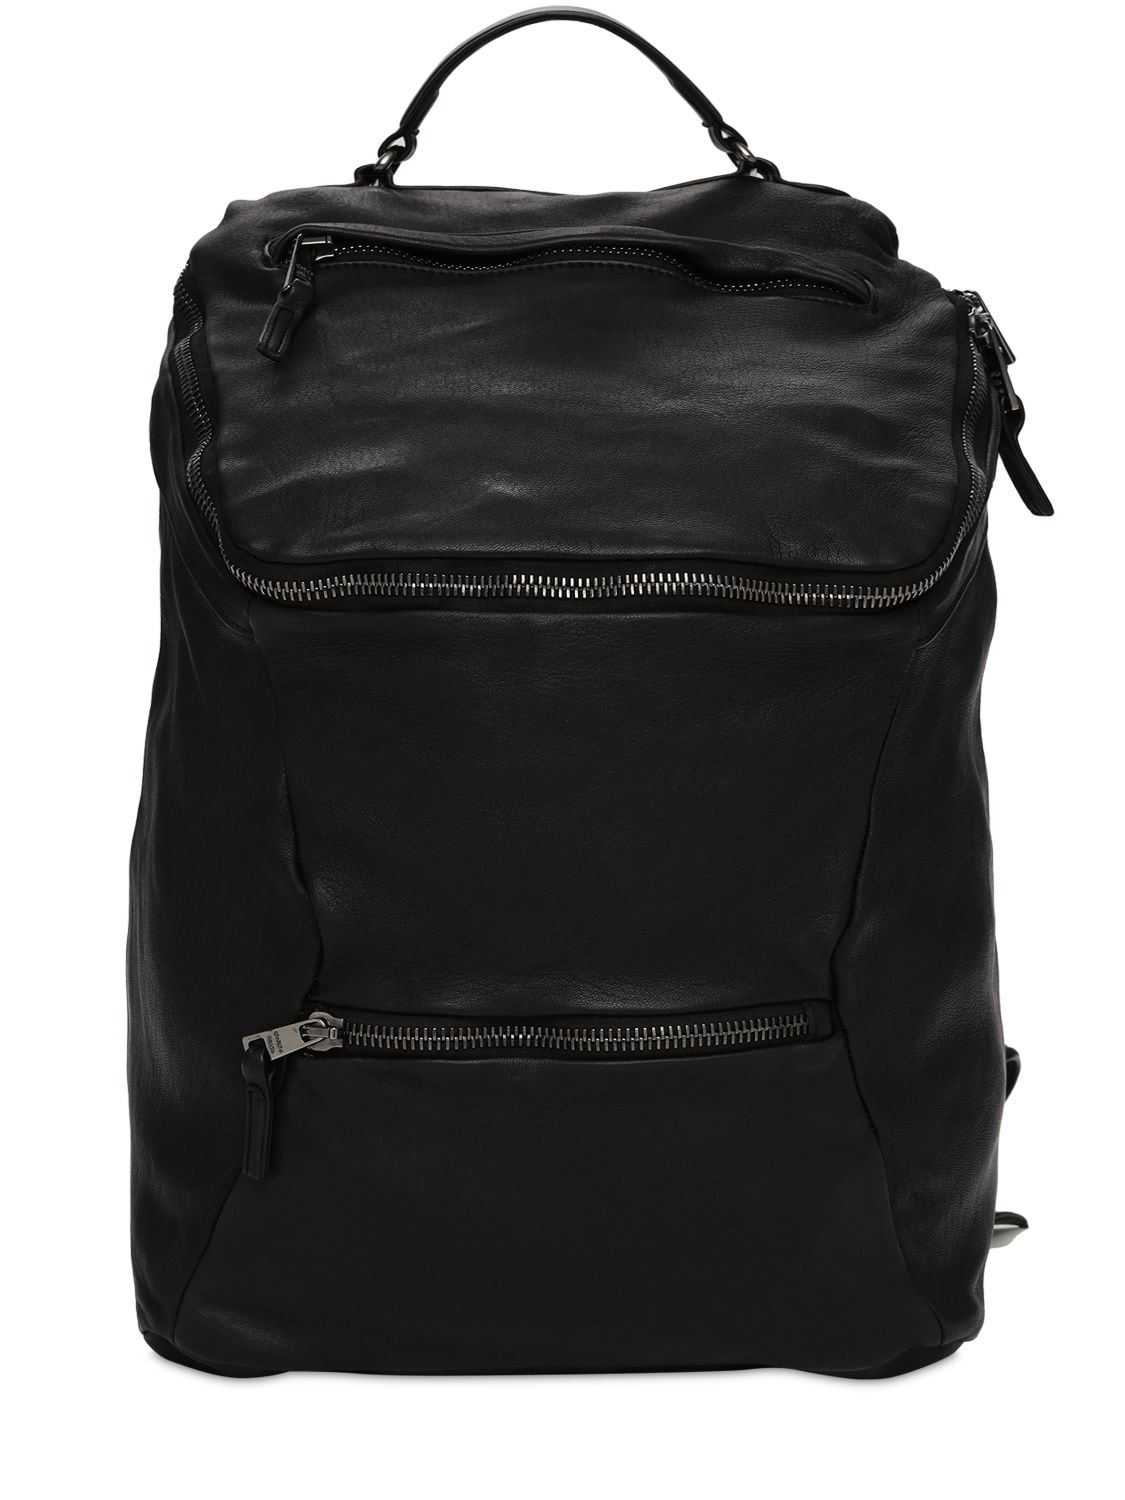 Giorgio Brato Leather Backpack In Black